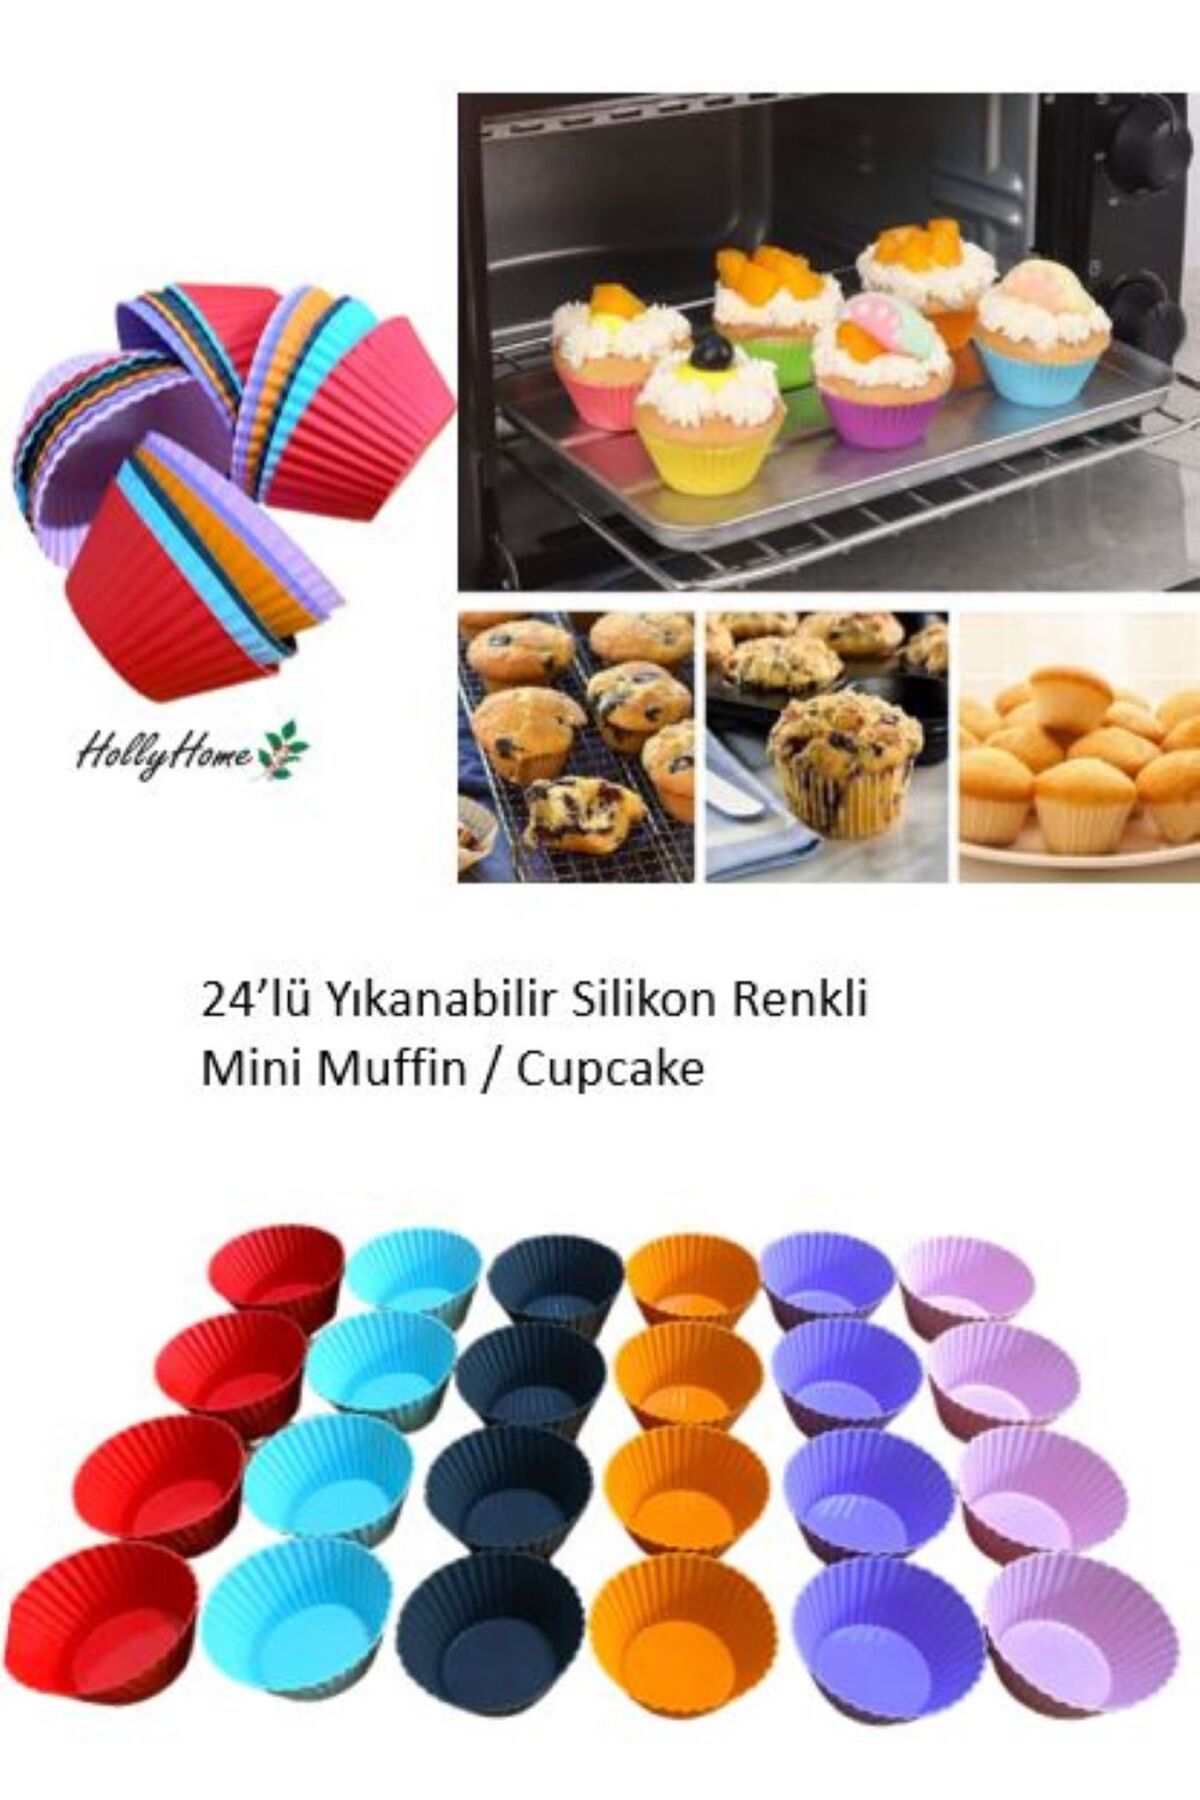 HOLLYHOME 24’lü Yıkanabilir Mini Tırtıklı Muffin Pişirme Kalıbı, Ribanalı Kek, Cupcake, Hamur Işi Renkli Kap